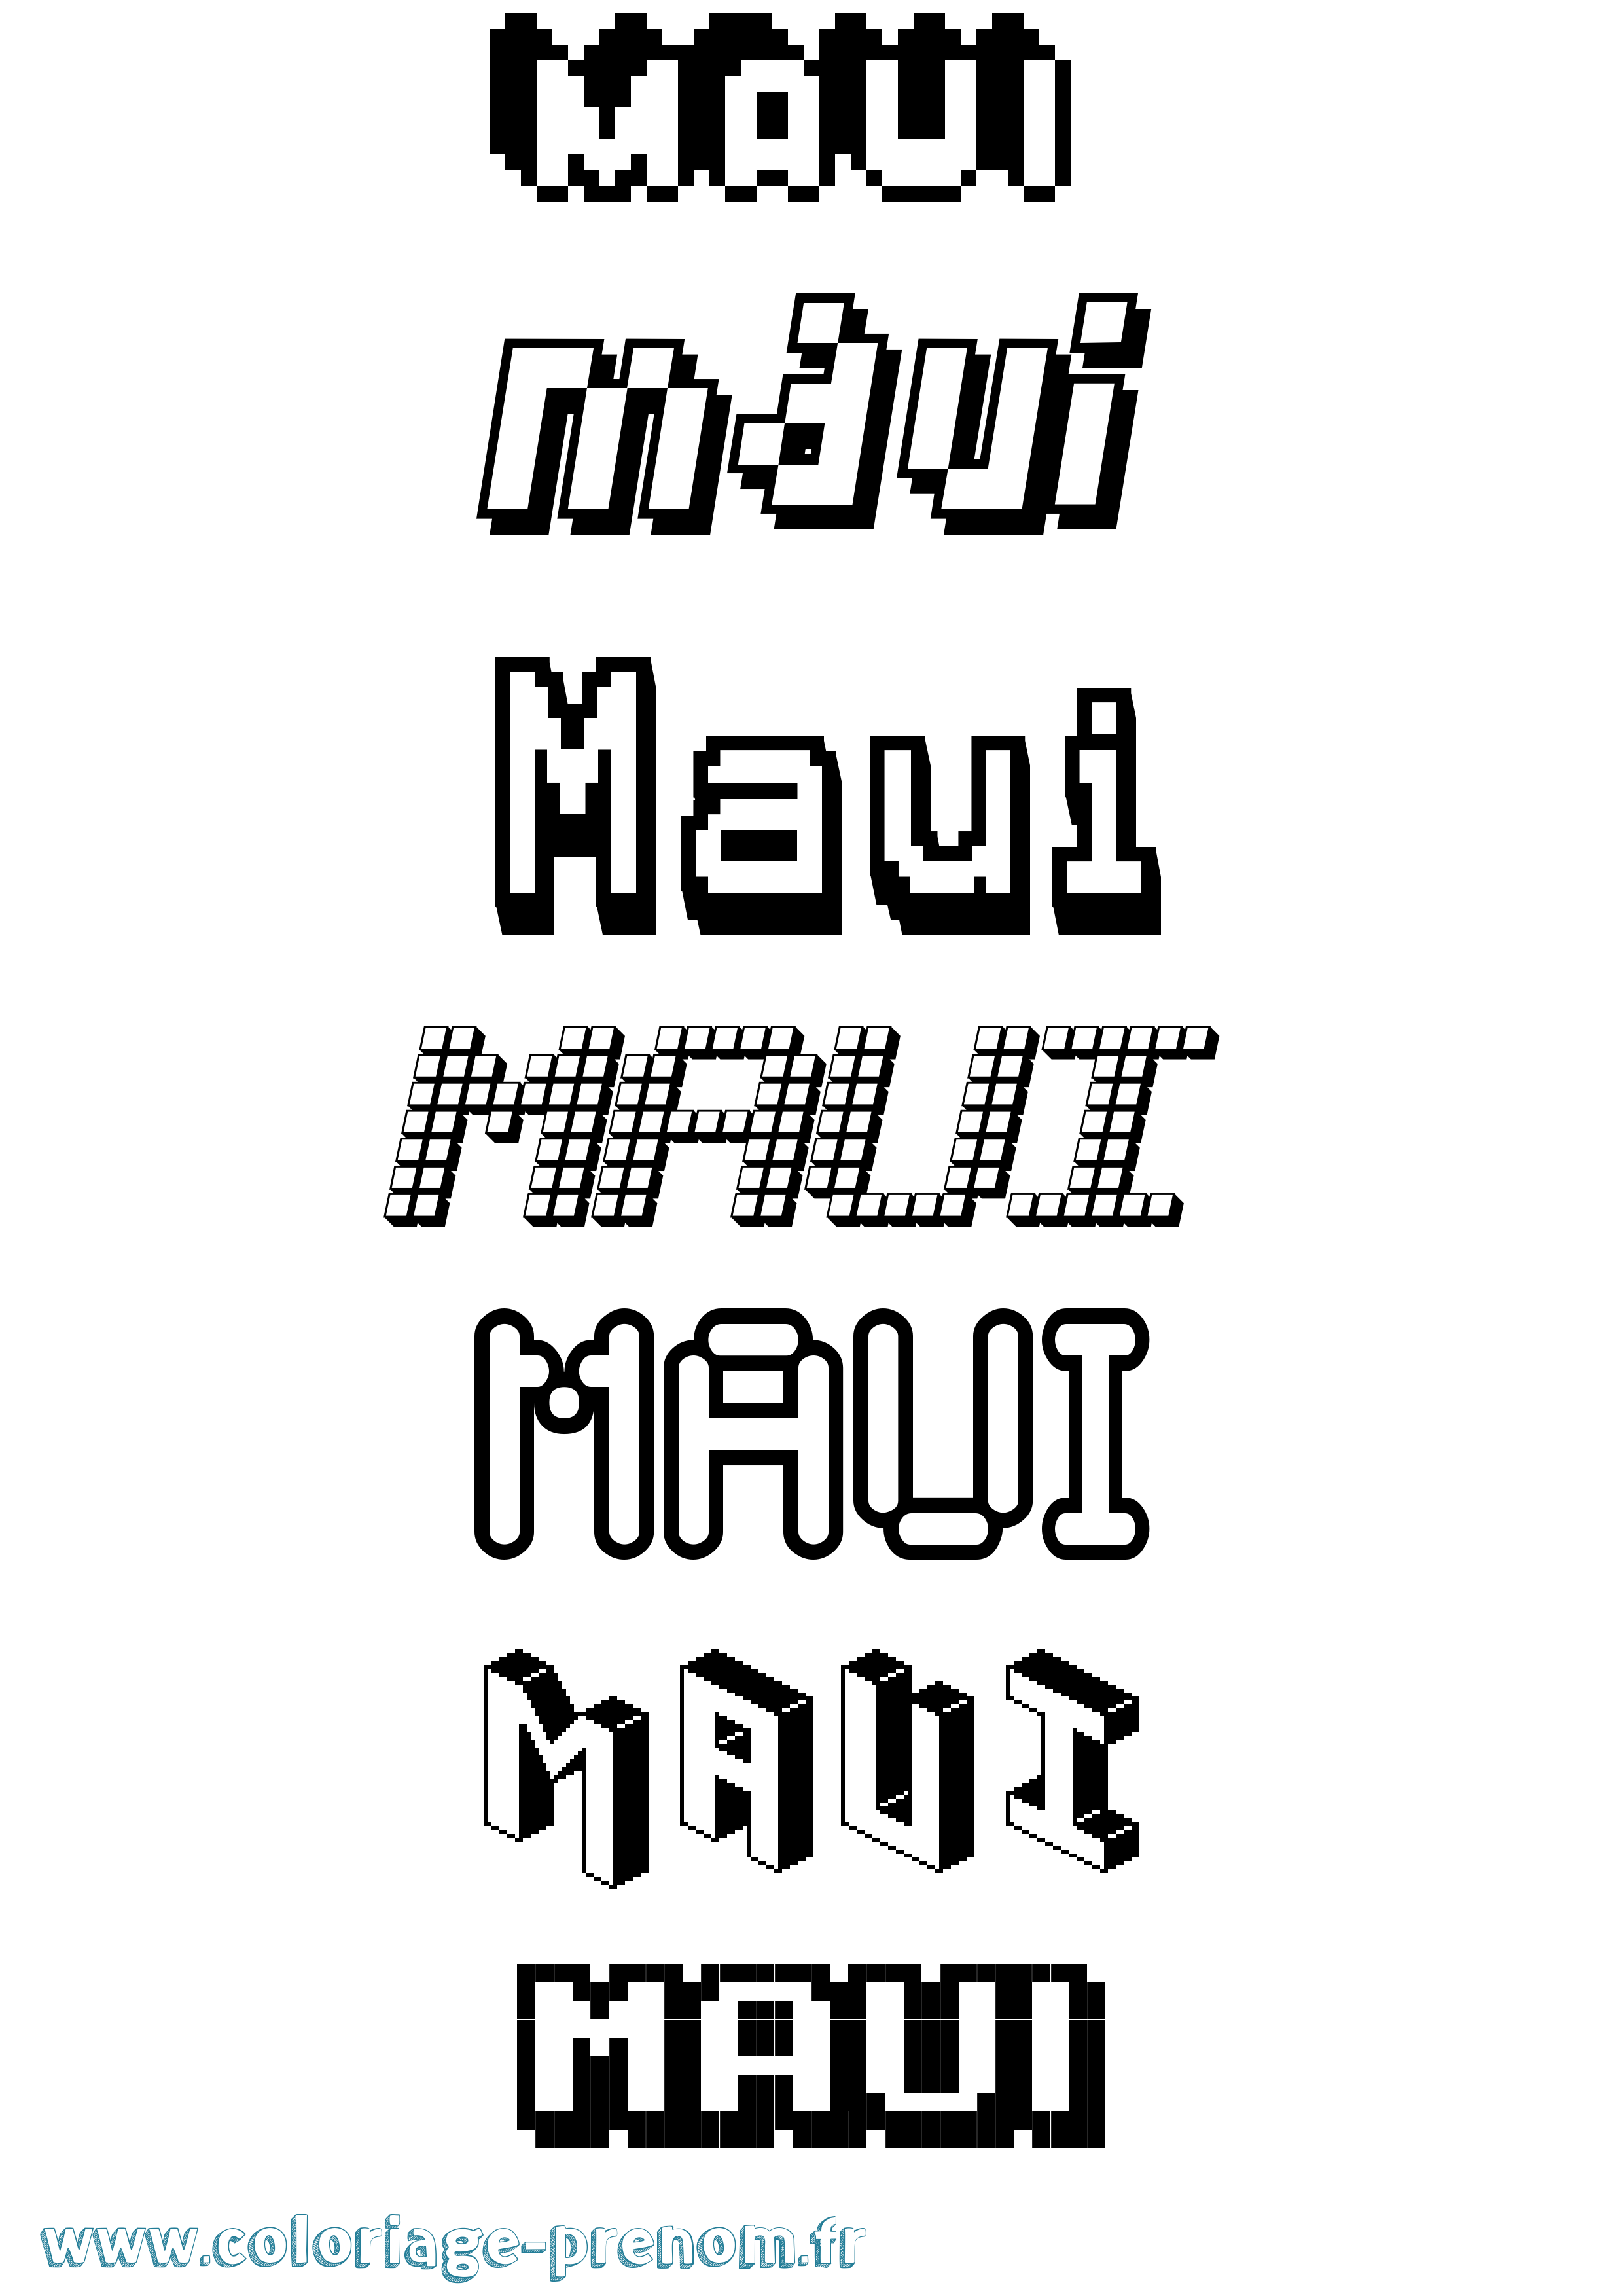 Coloriage prénom Maui Pixel